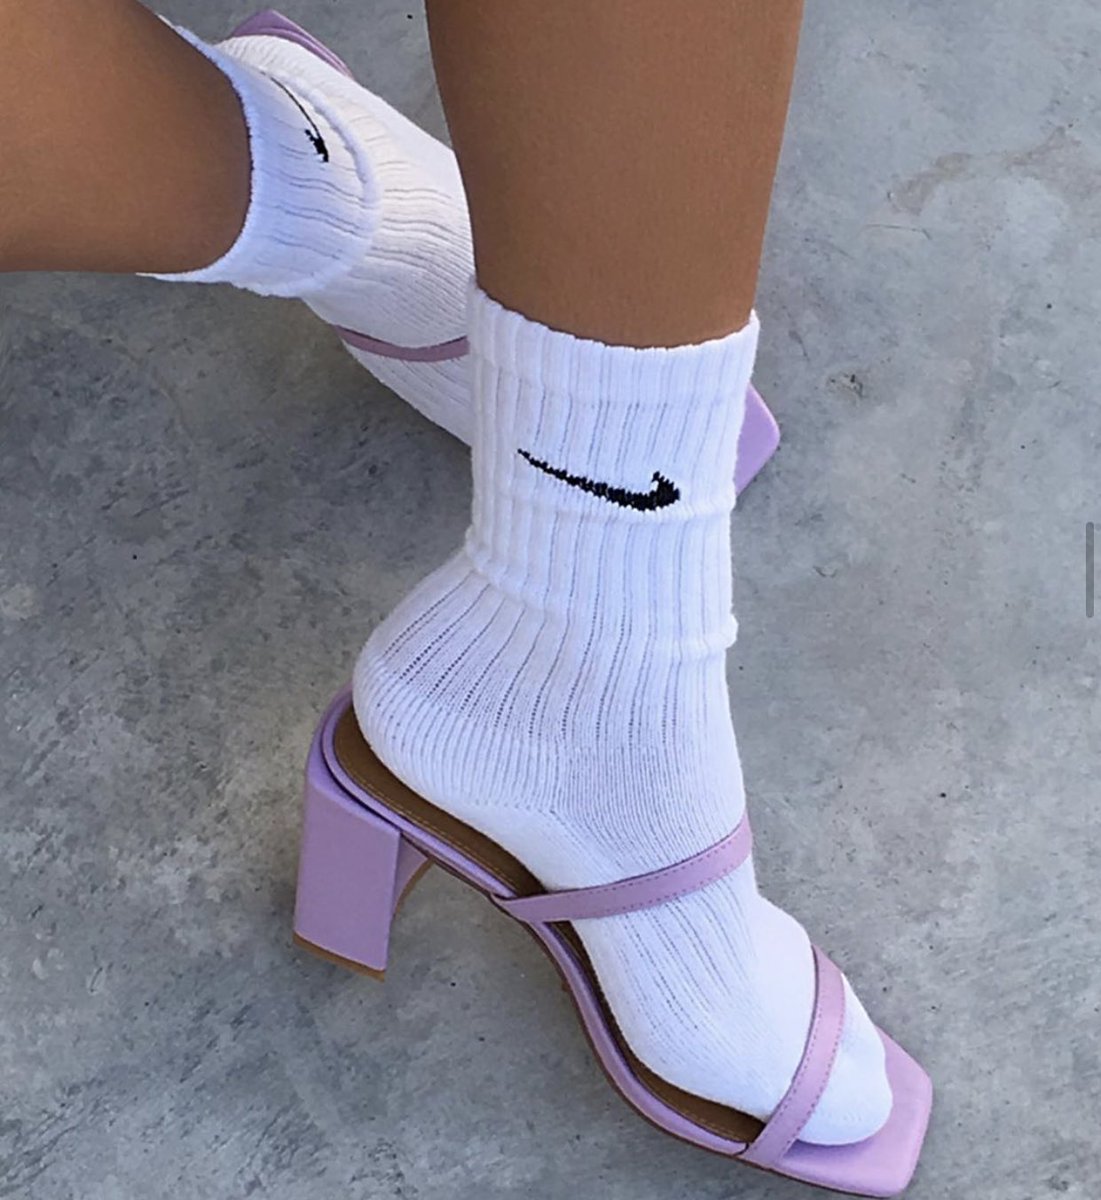 socks under heels